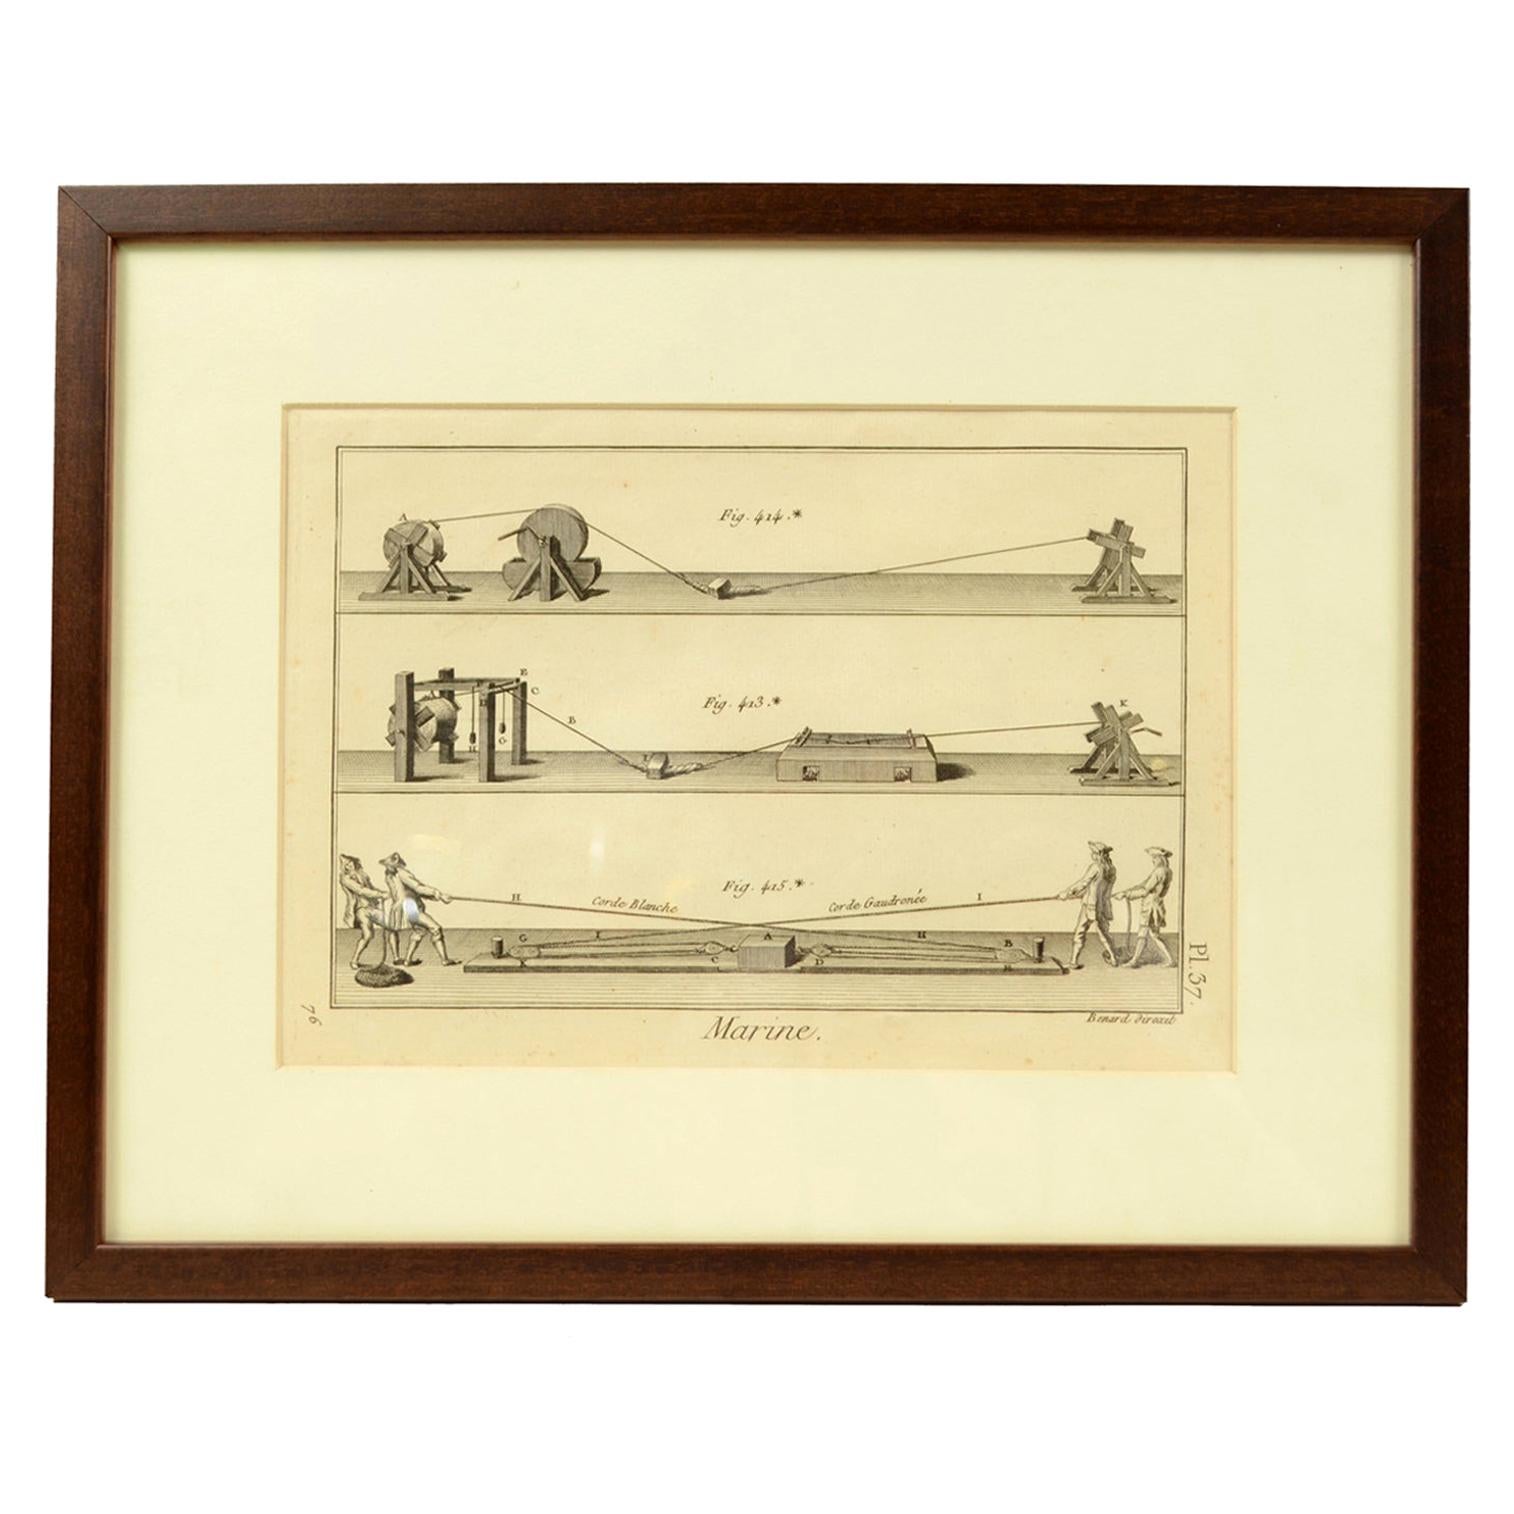 Impression de gravure du sujet nautique de l'Encyclopédie de Panckoucke, 1782-1832